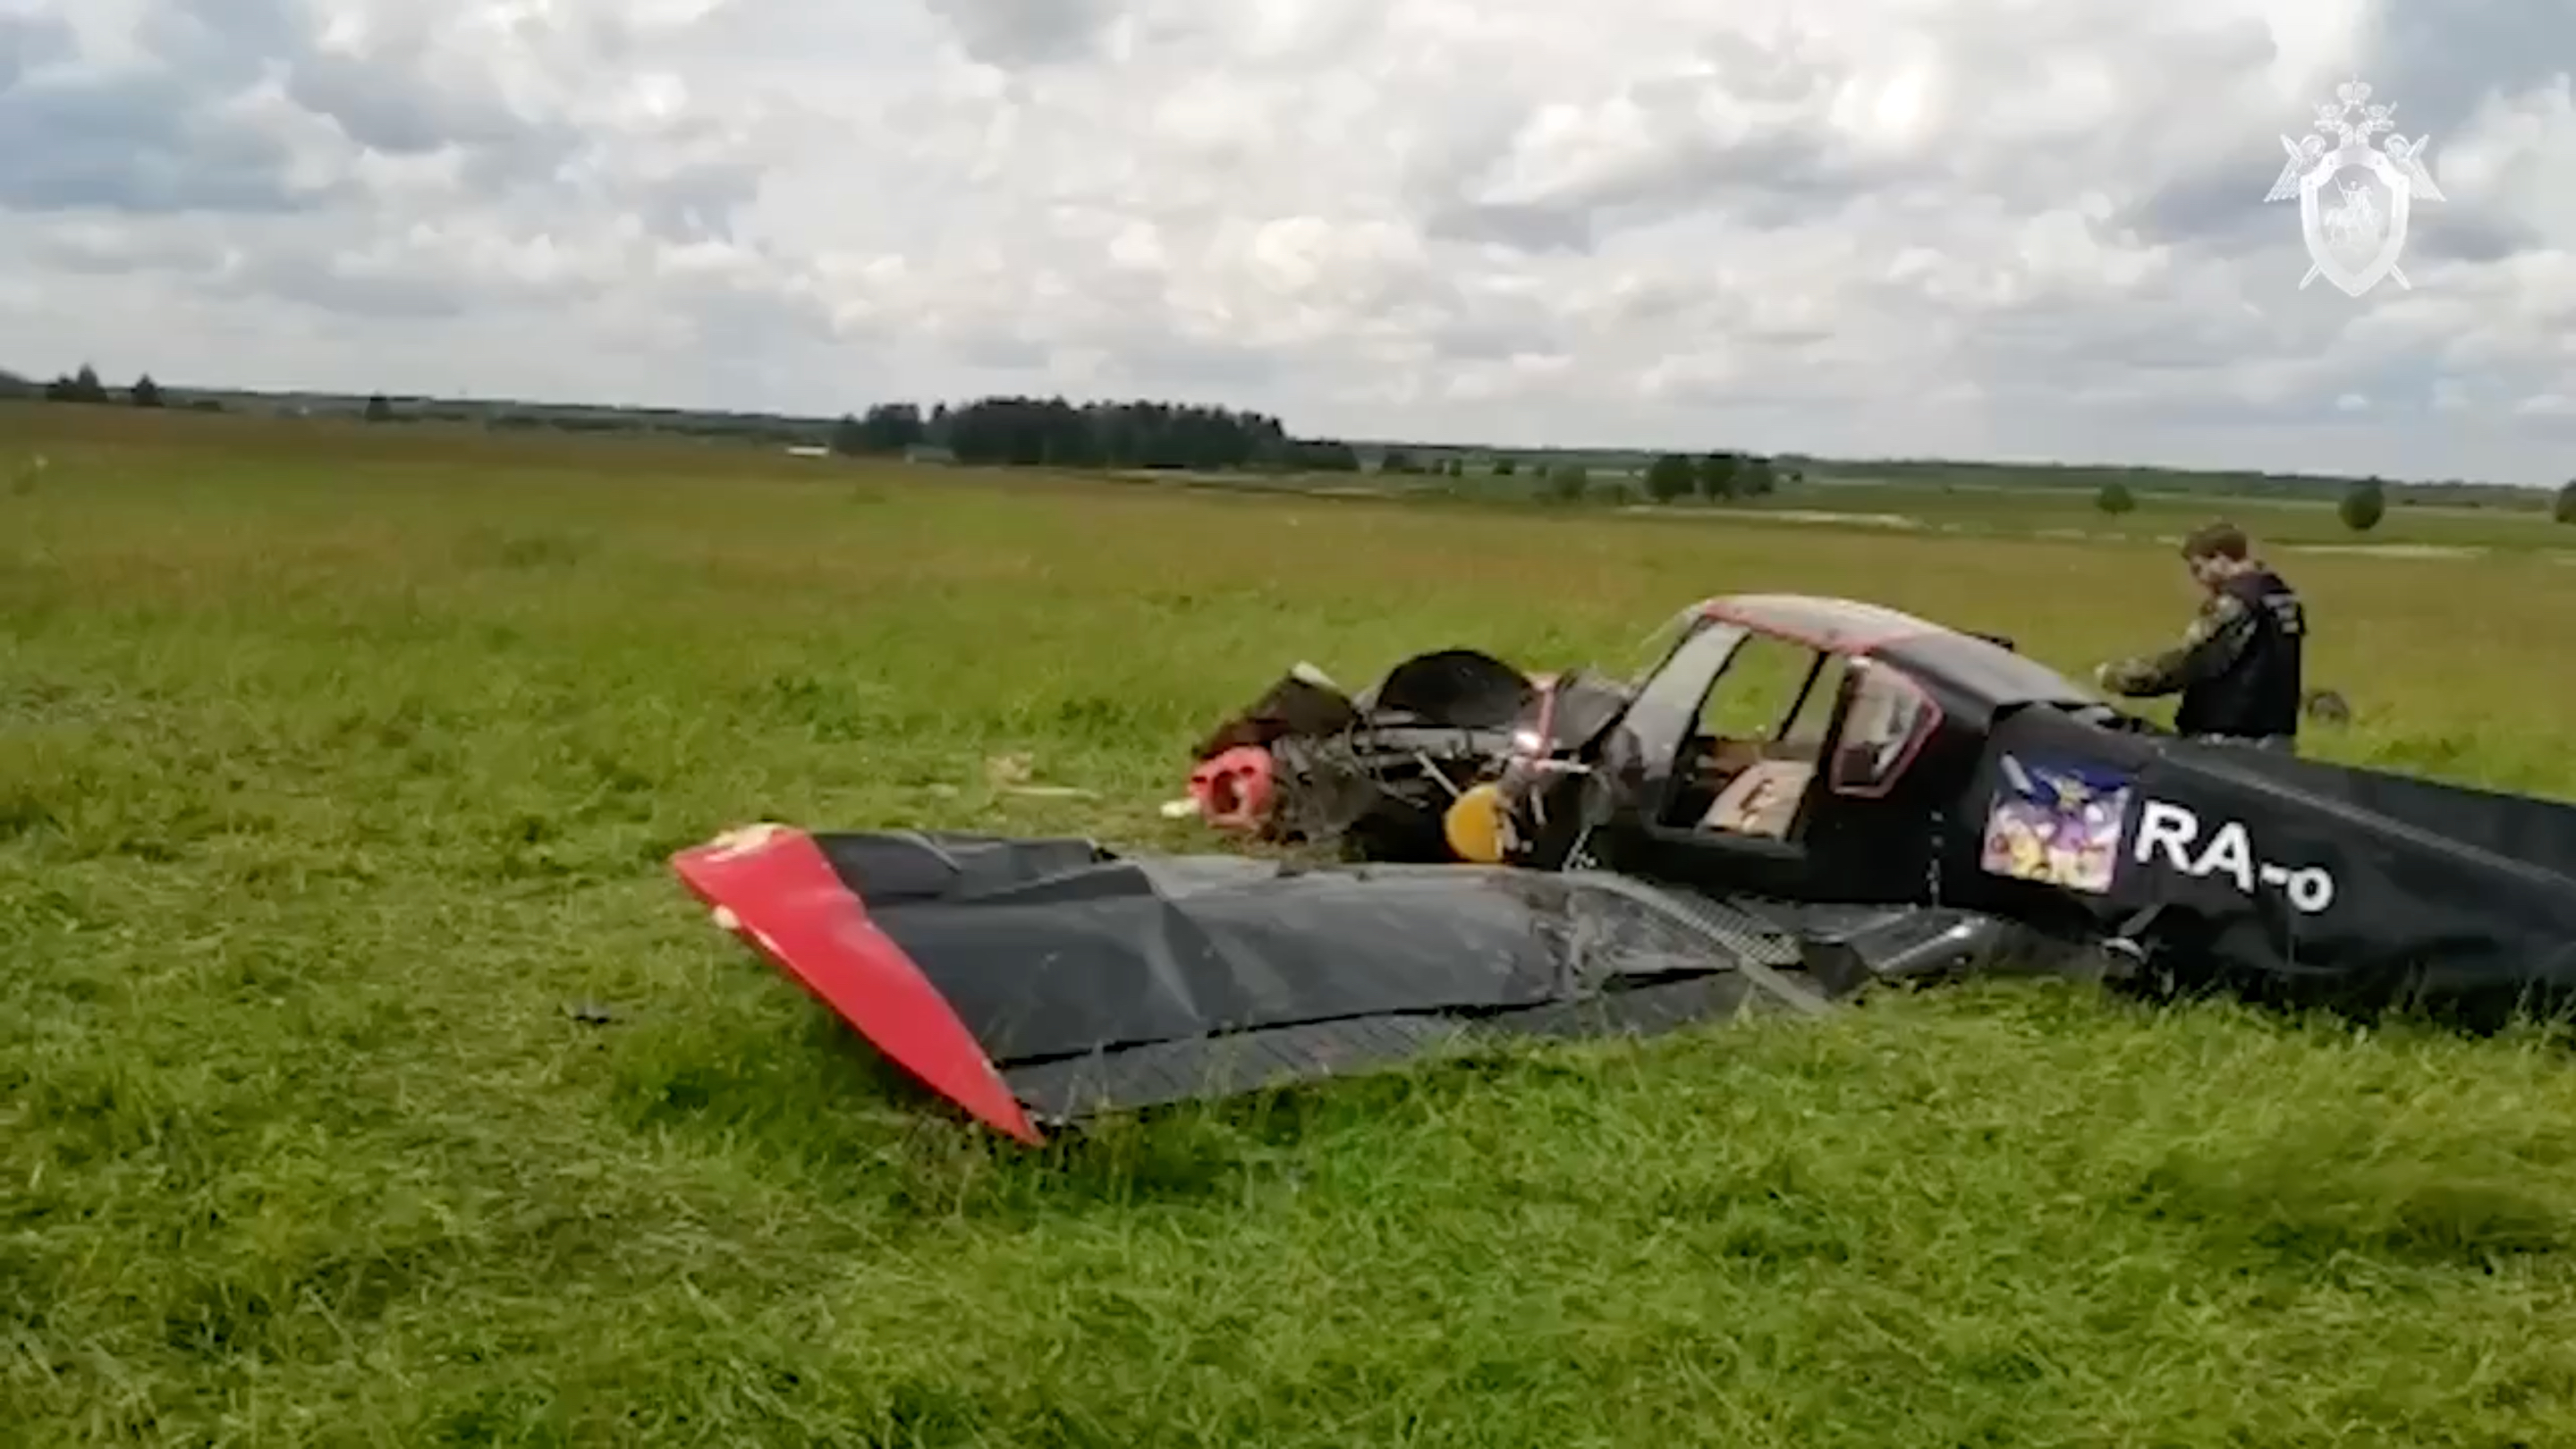 В Тверской области разбился легкомоторный самолет